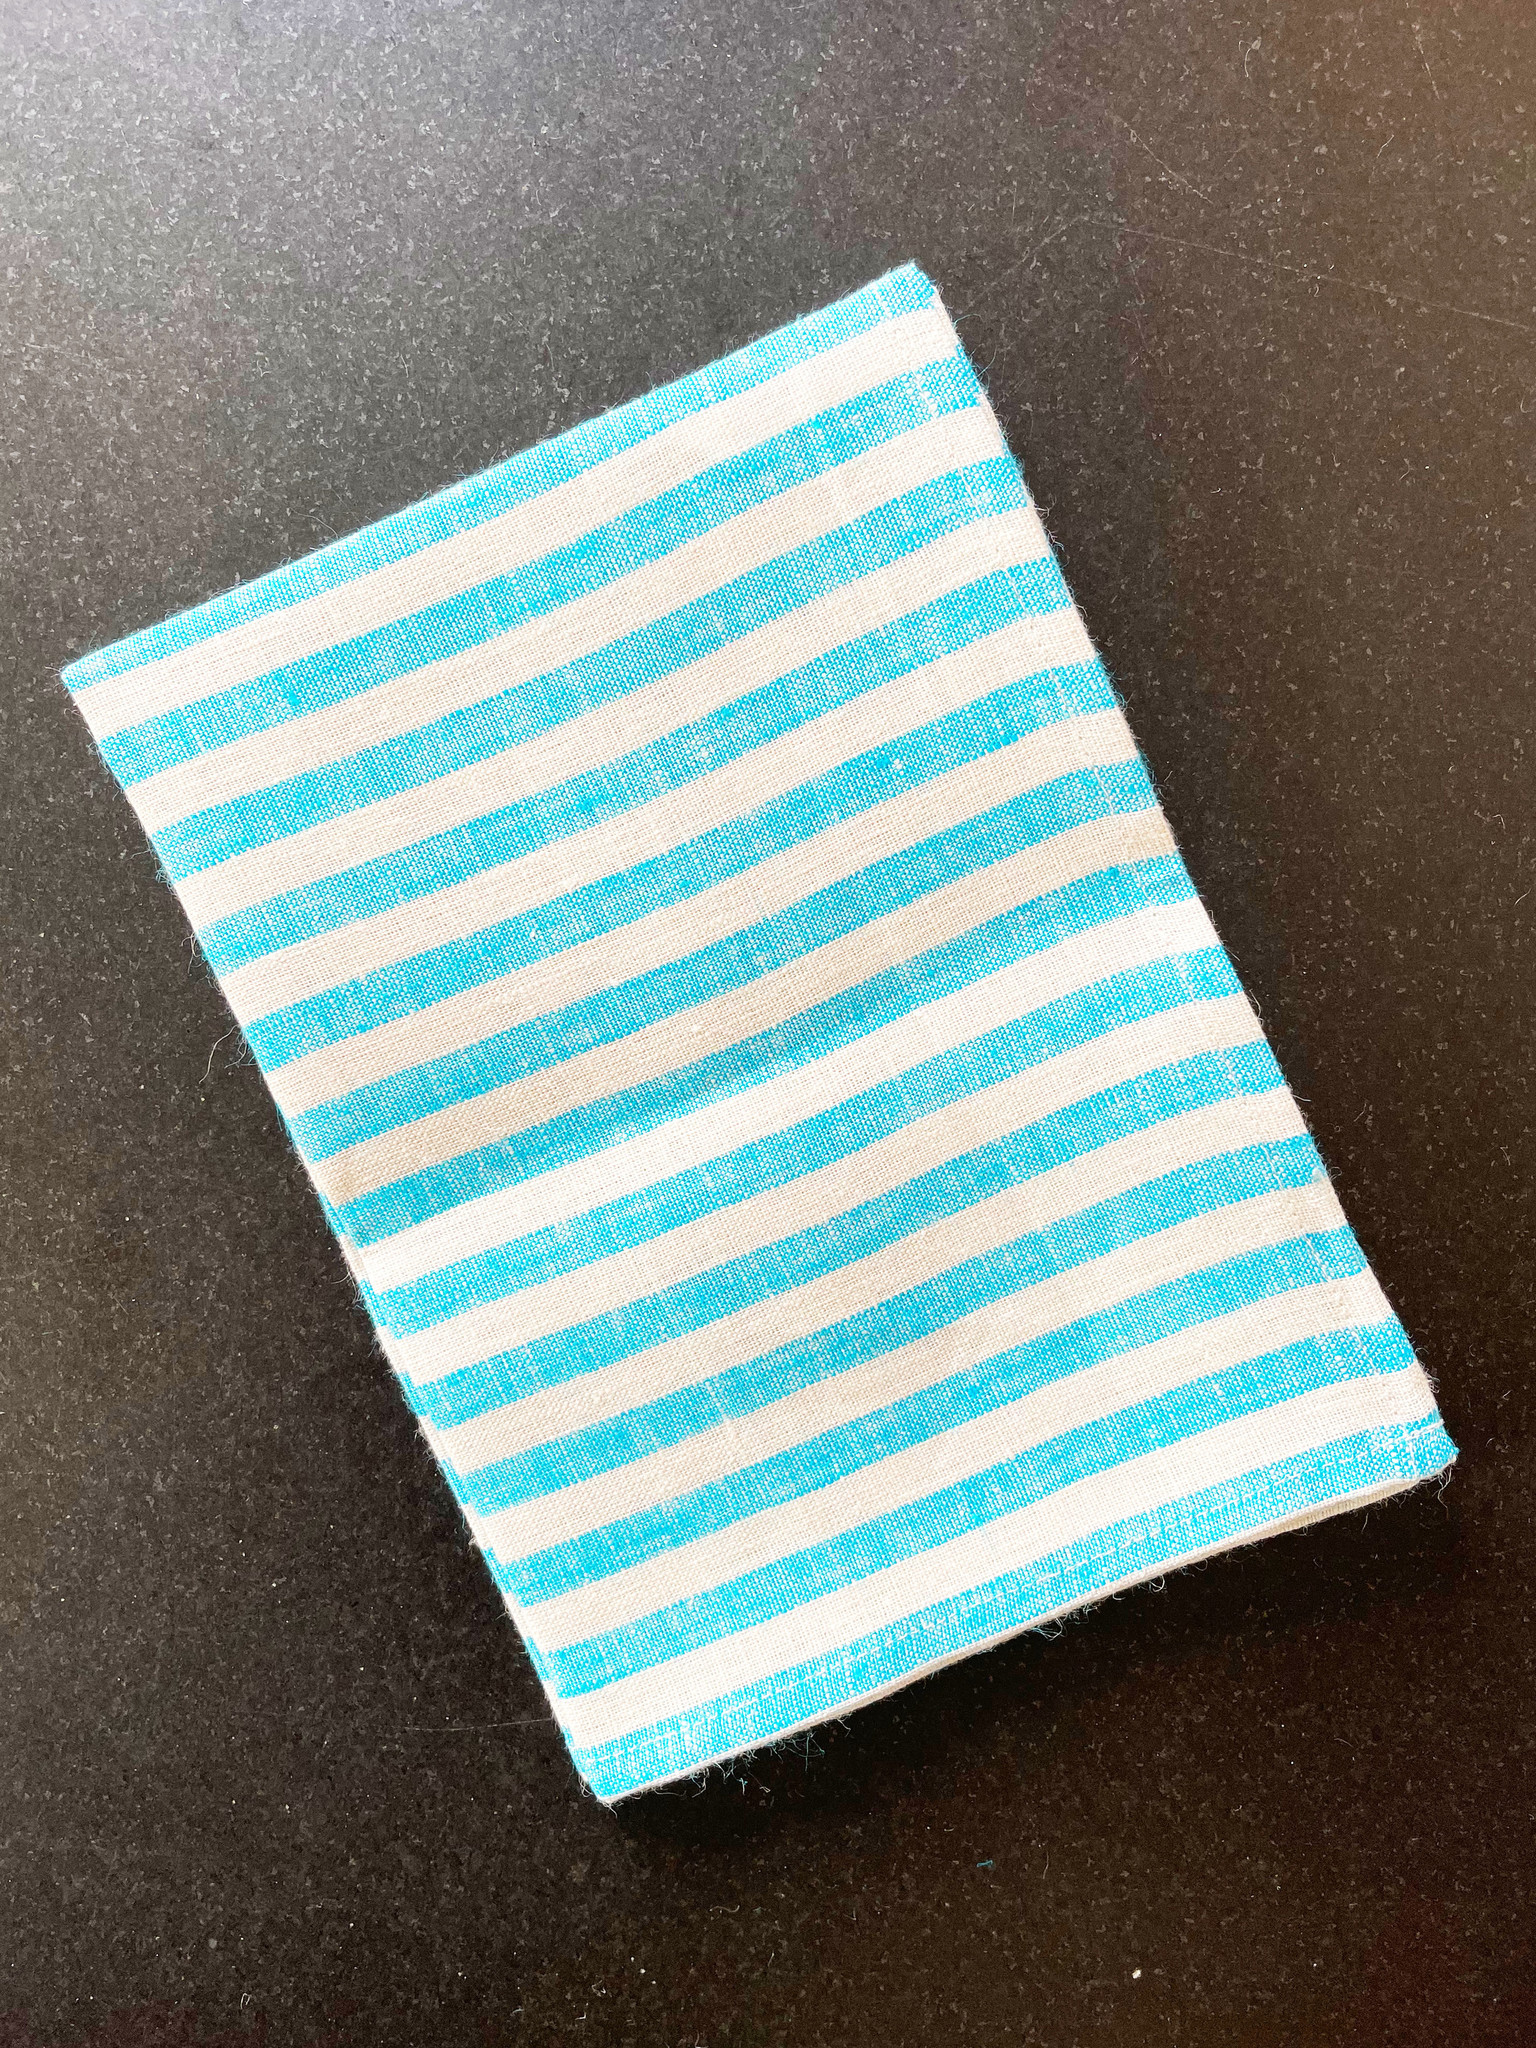 Fog Linen Light Blue + White Striped Towel - CORK